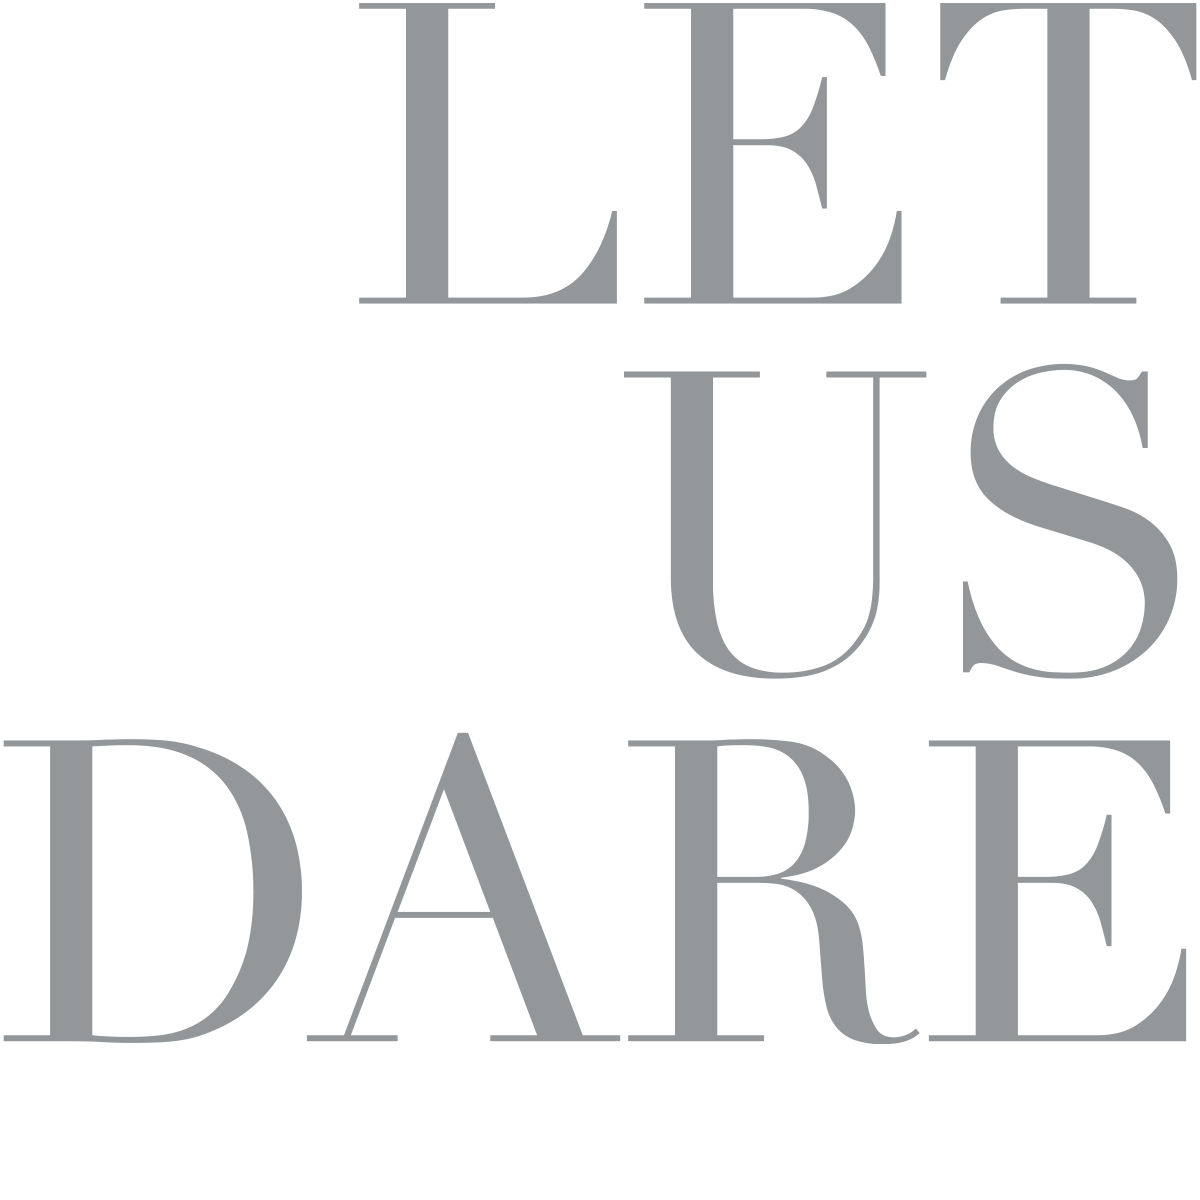 Let Us Dare